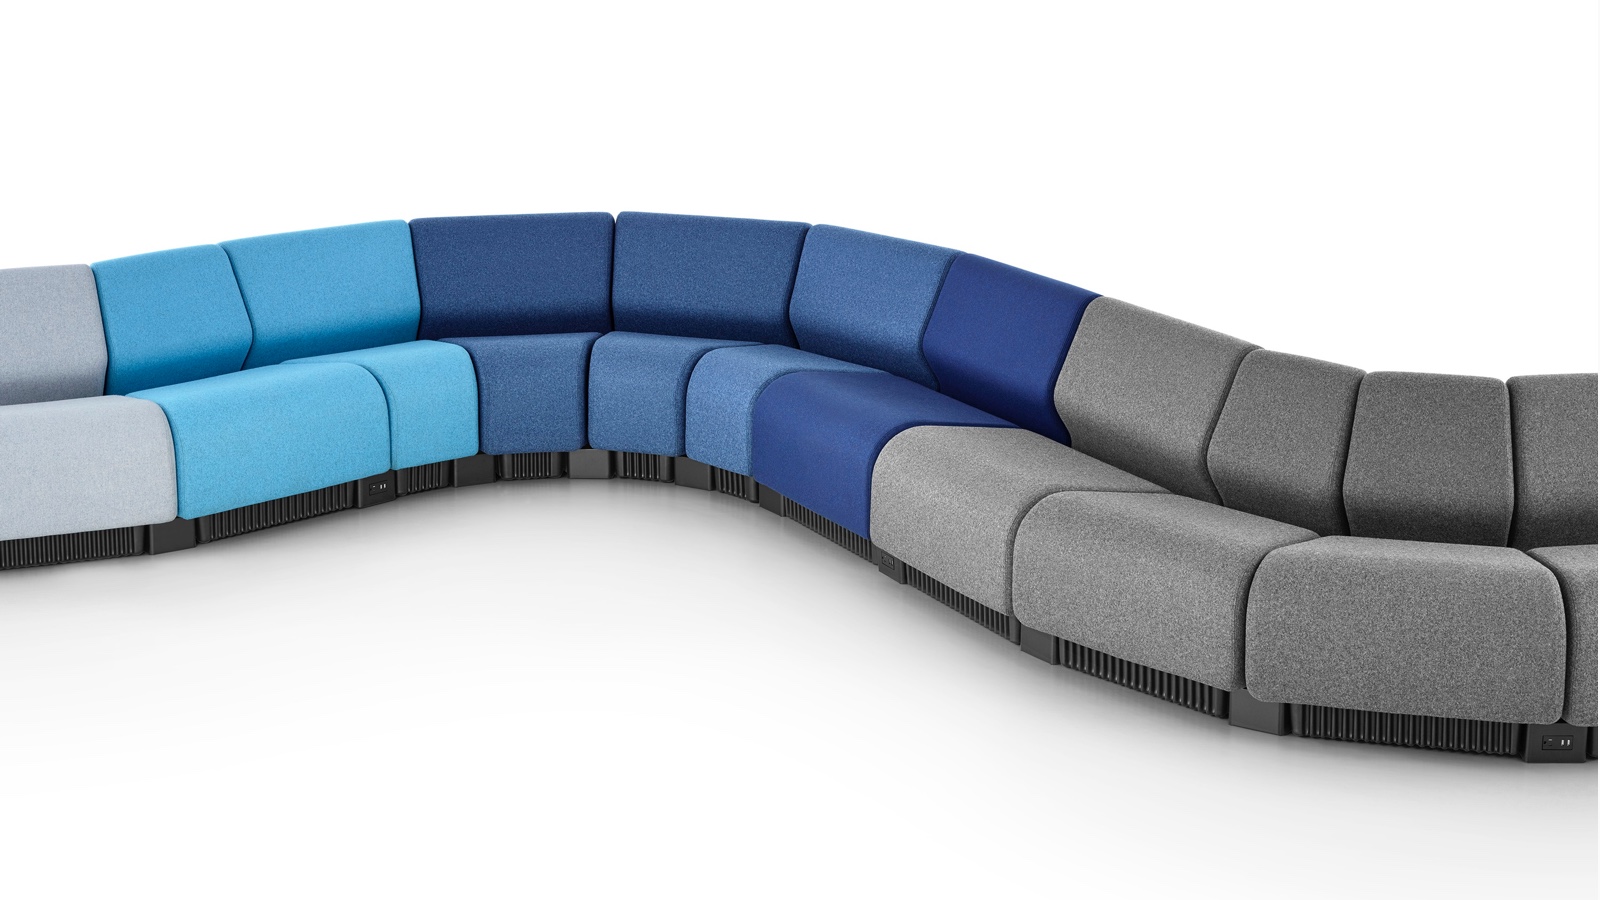 Une configuration d'assise en serpentin formée avec les modules Chadwick Modular Seating dans les tons de gris et de bleu.